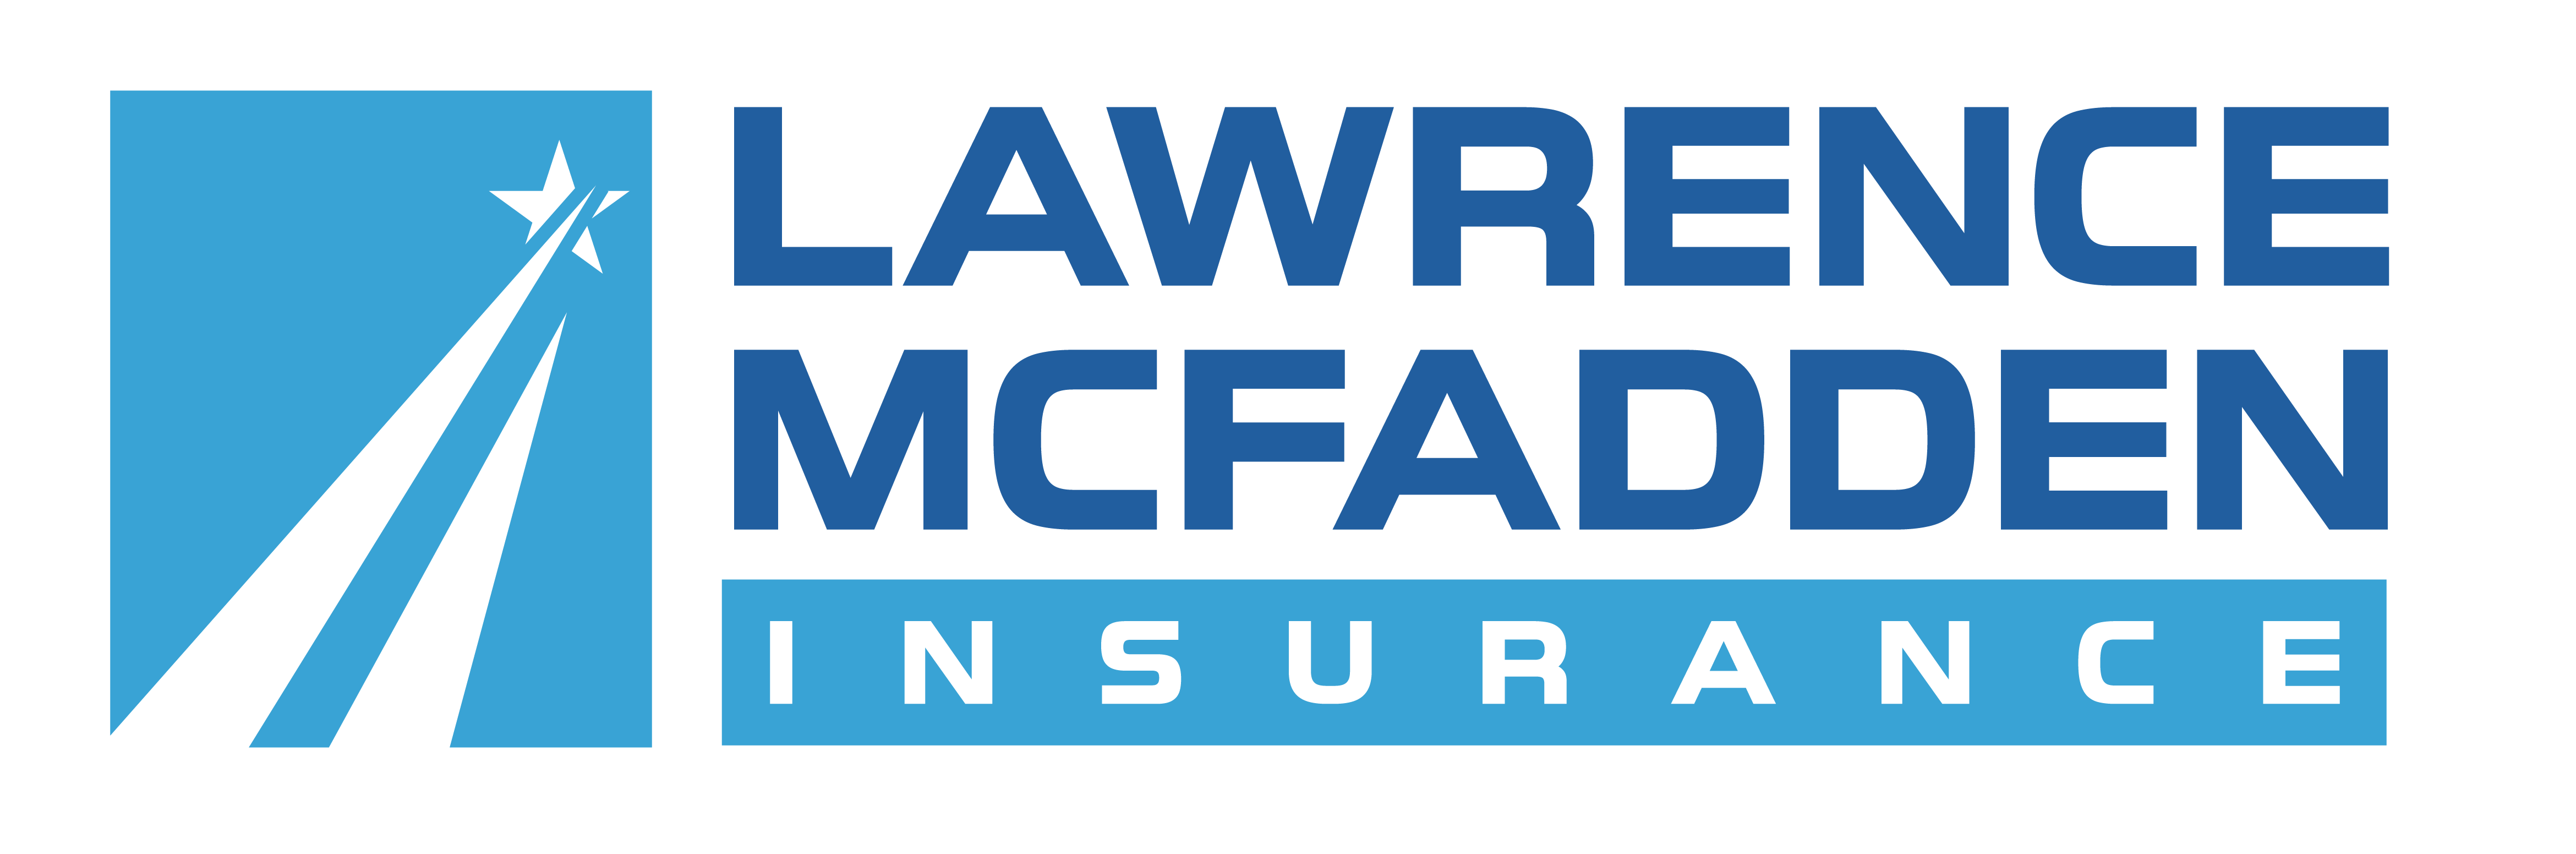 Lawrence McFadden Insurance Agency'